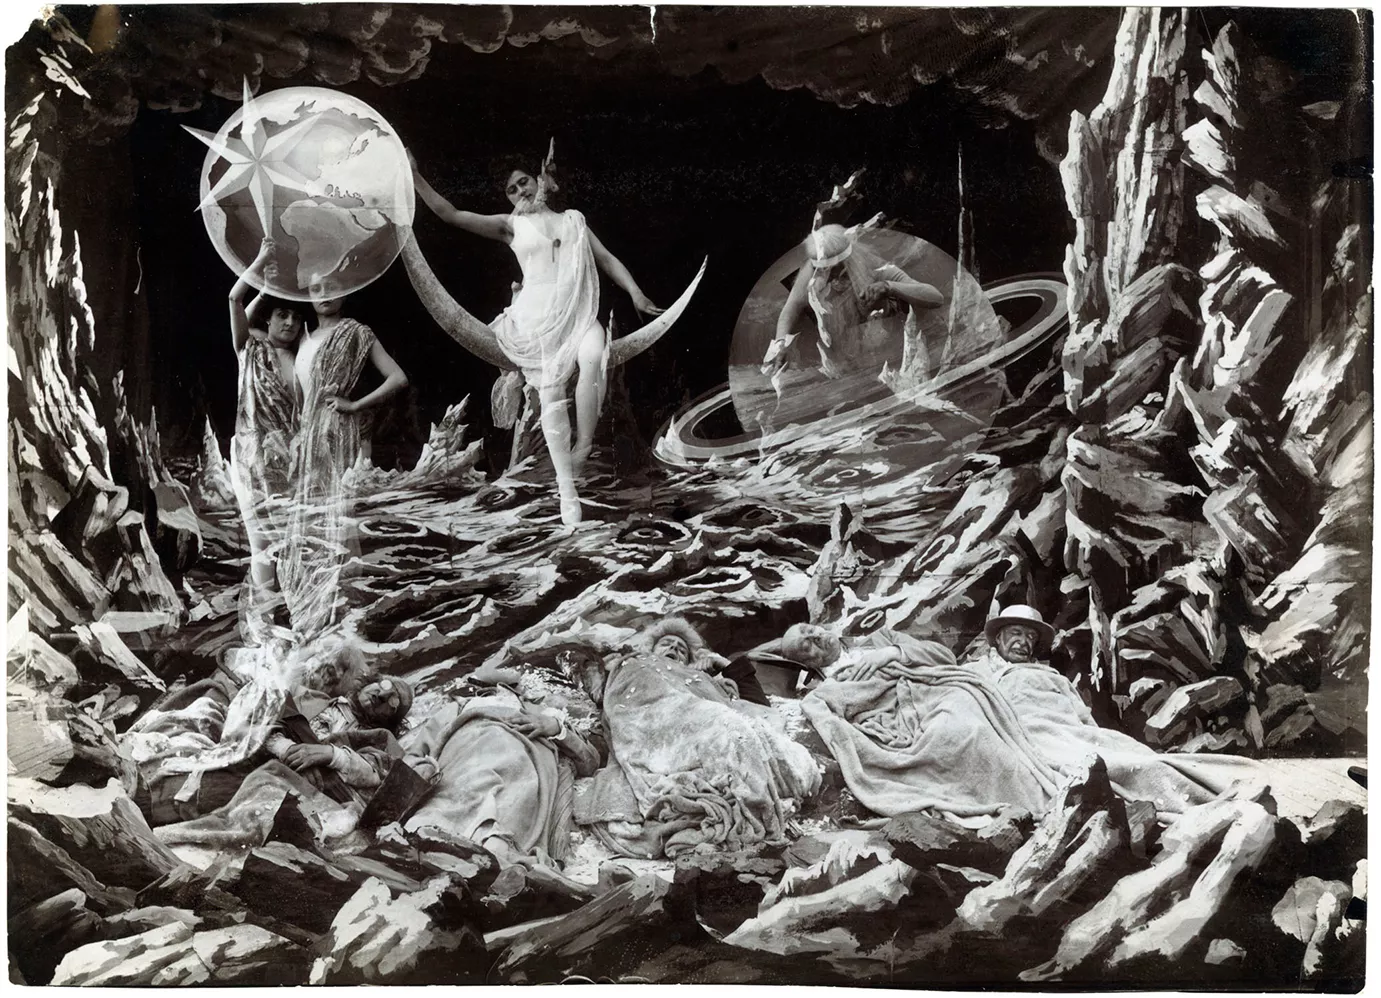 Al film 'Viatge a la Lluna', Georges Méliès adapta dues cèlebres novel·les: 'De la Terra a la Lluna', de Jules Verne, i 'Els primers homes a la Lluna', de H.G. Wells